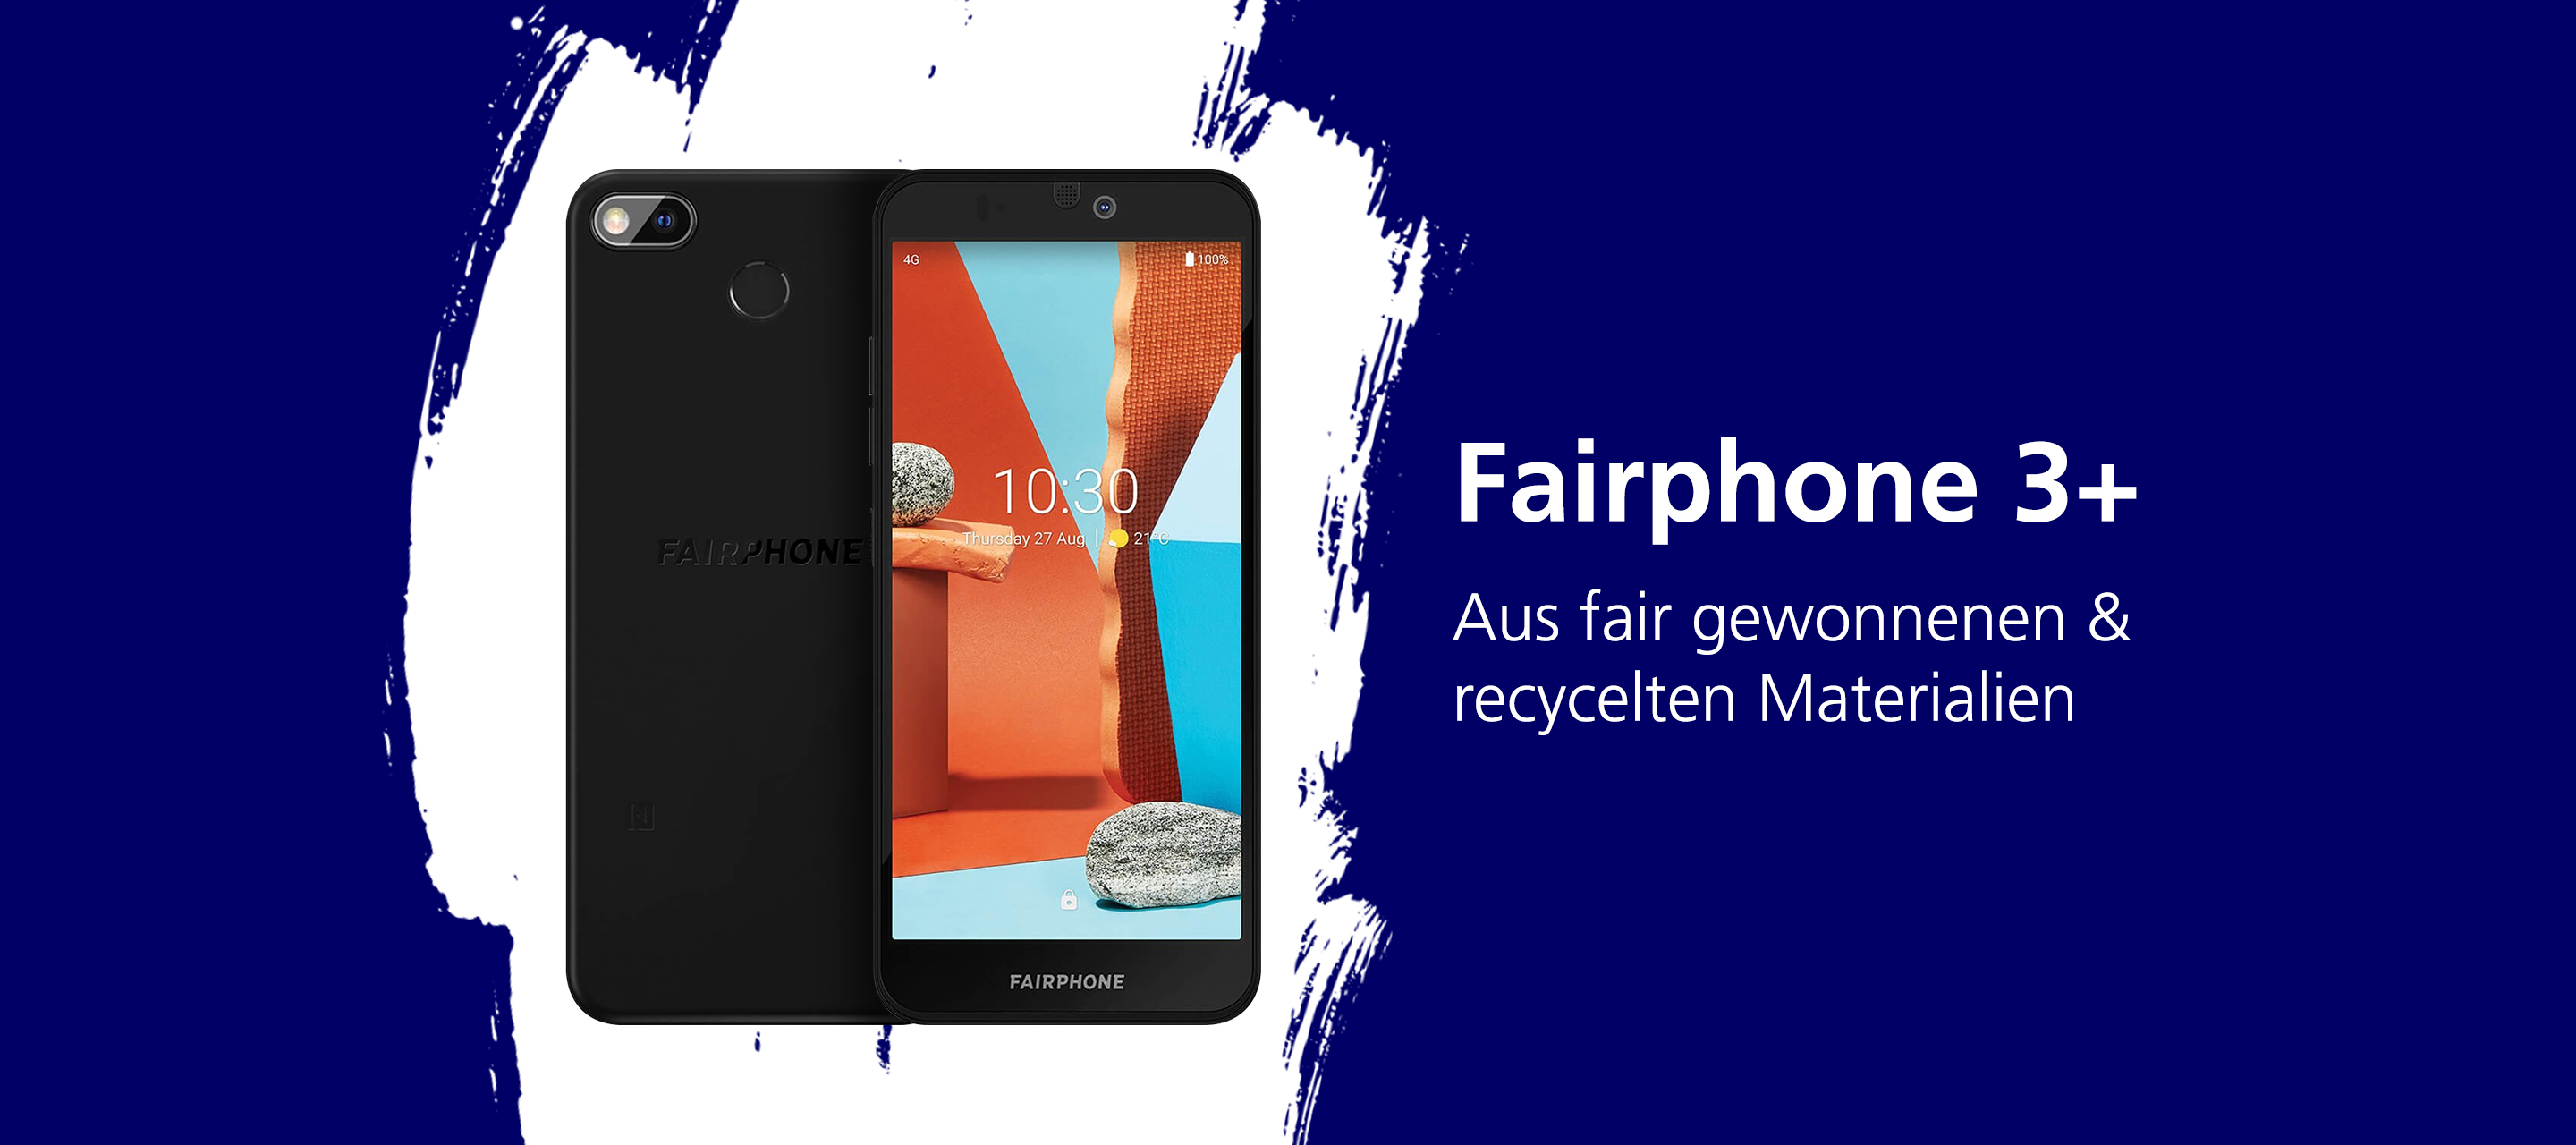 Das Fairphone 3+ gibt es jetzt bei O₂